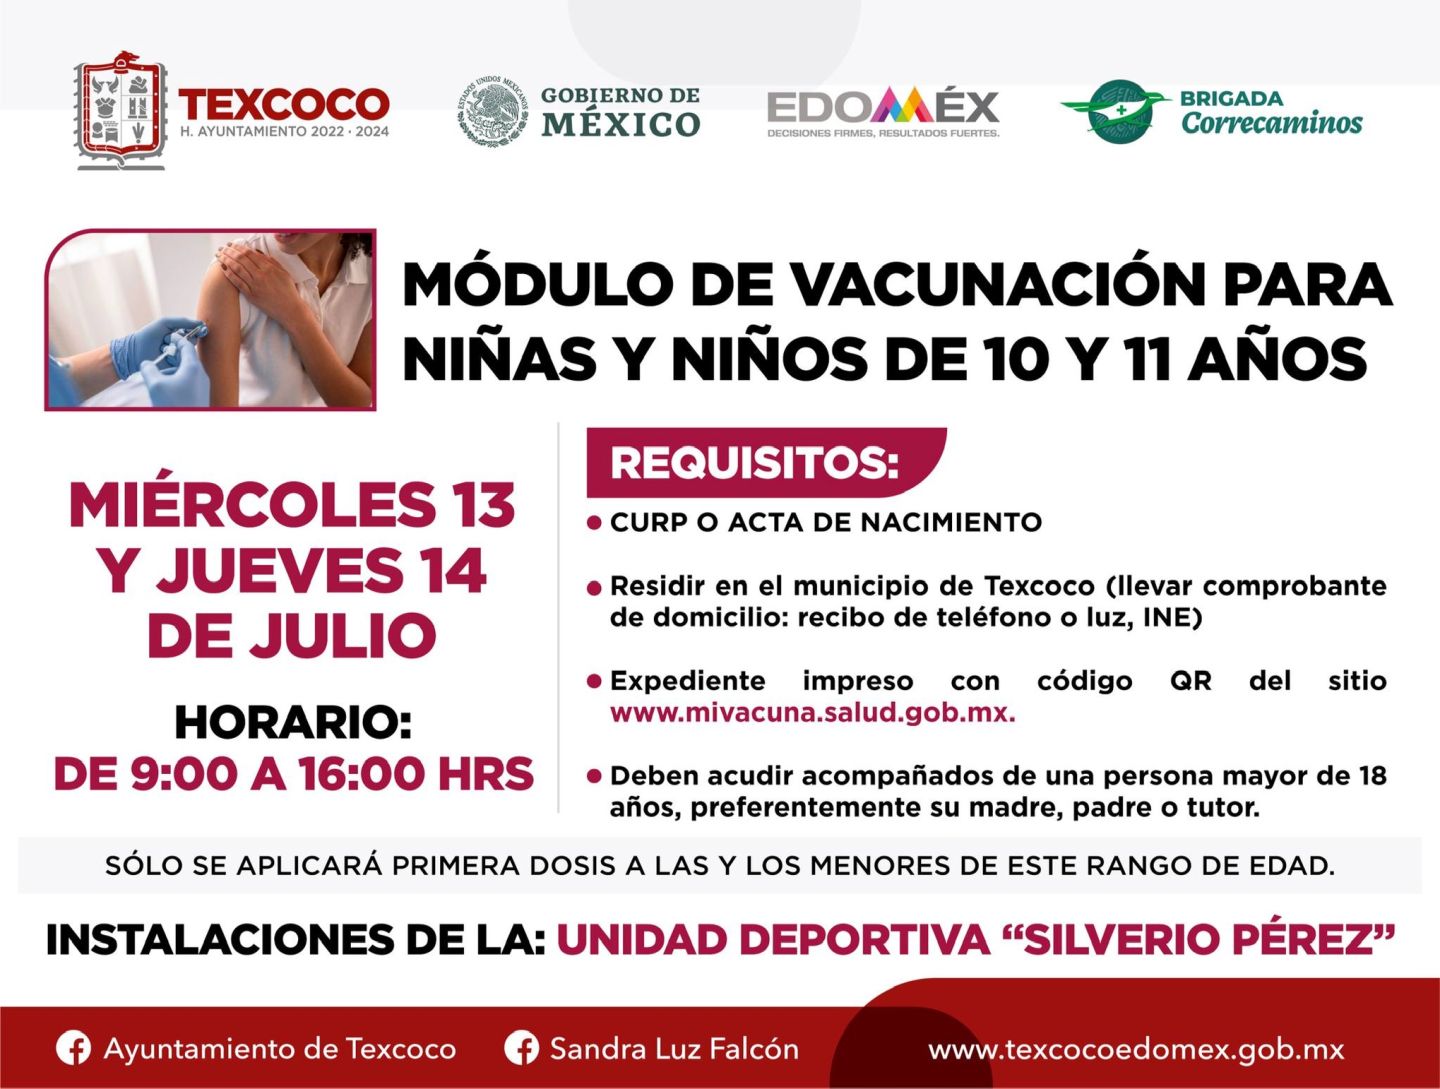 Miércoles 13 y jueves 14 de julio del 2022, se vacunará únicamente a menores de 10 y 11 años de Texcoco 